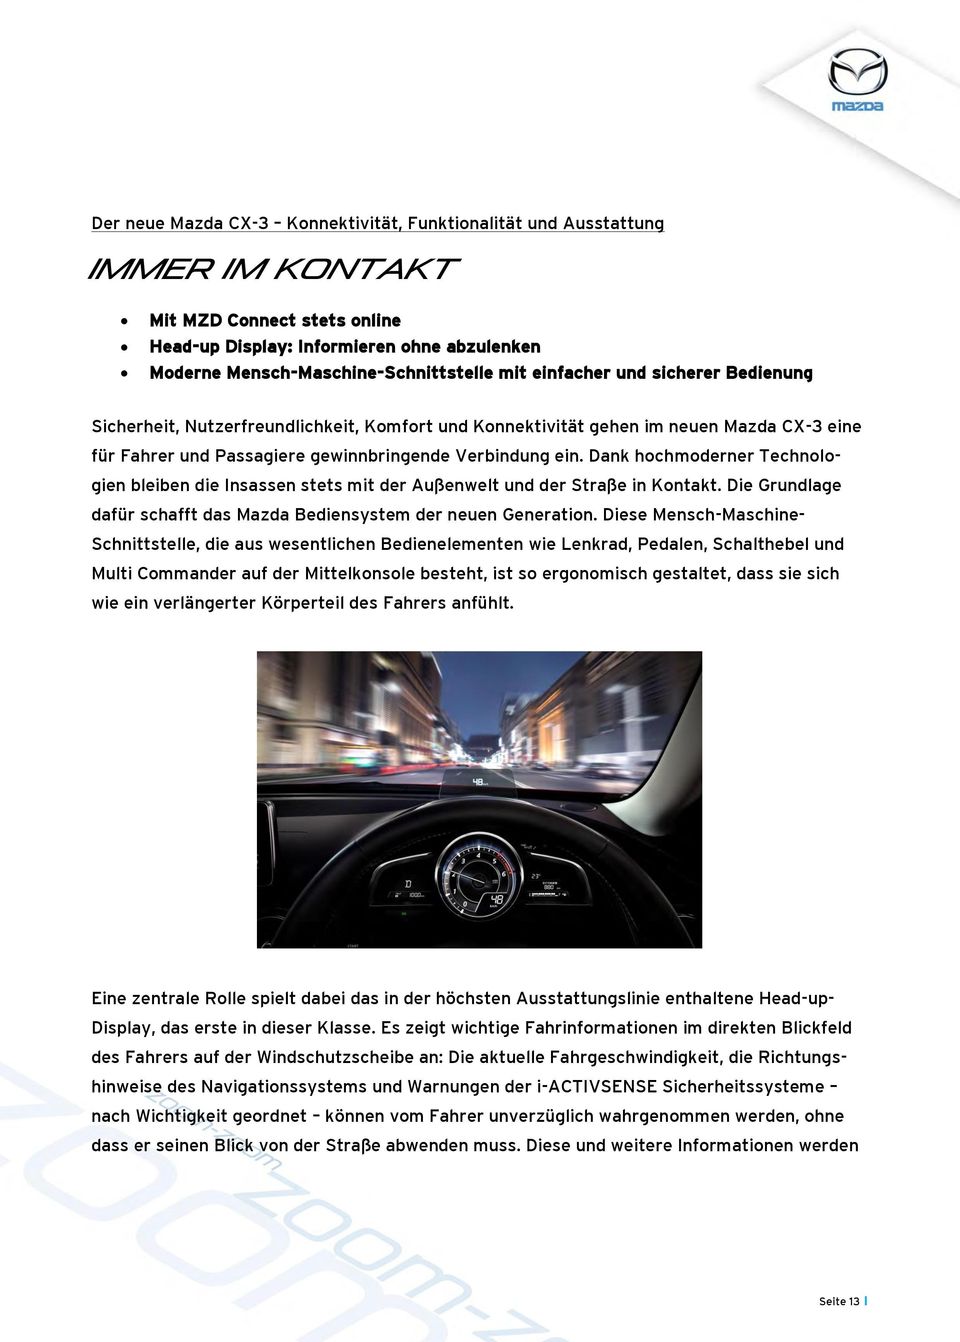 Dank hochmoderner Technologien bleiben die Insassen stets mit der Außenwelt und der Straße in Kontakt. Die Grundlage dafür schafft das Mazda Bediensystem der neuen Generation.